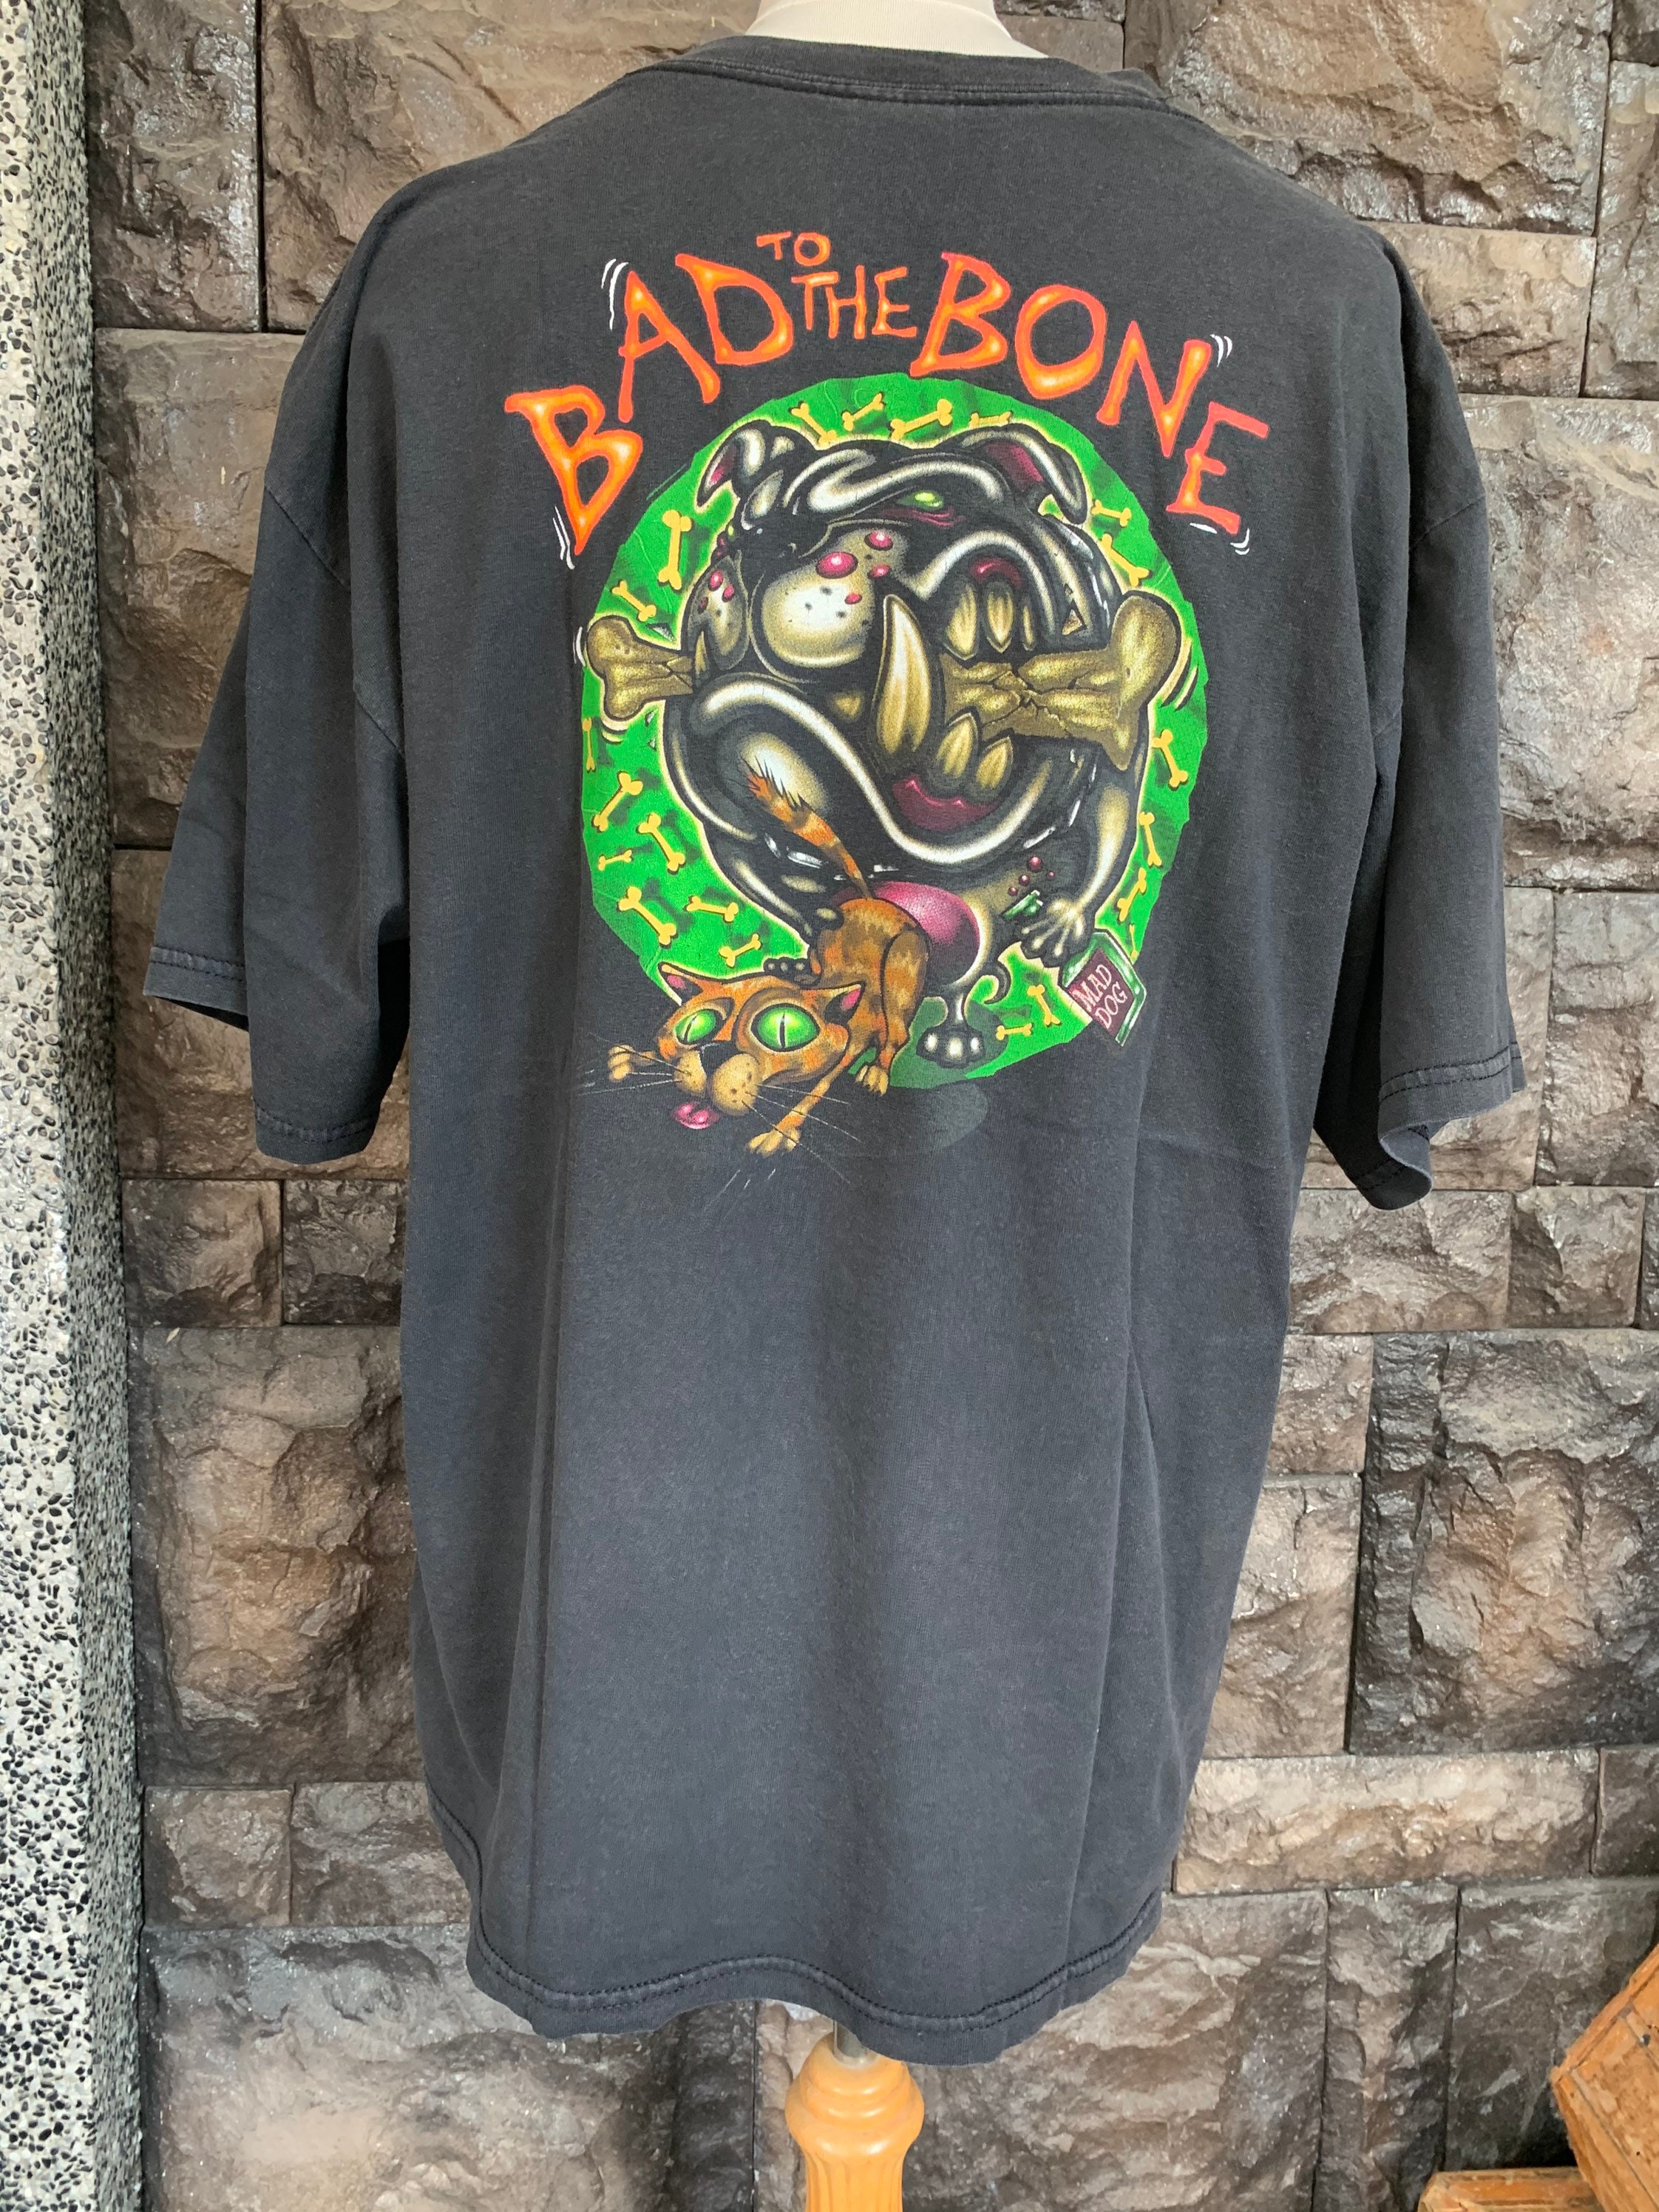 Vintage GEORGE THOROGOOD Bad to the Bone Tour Tshirt - Etsy